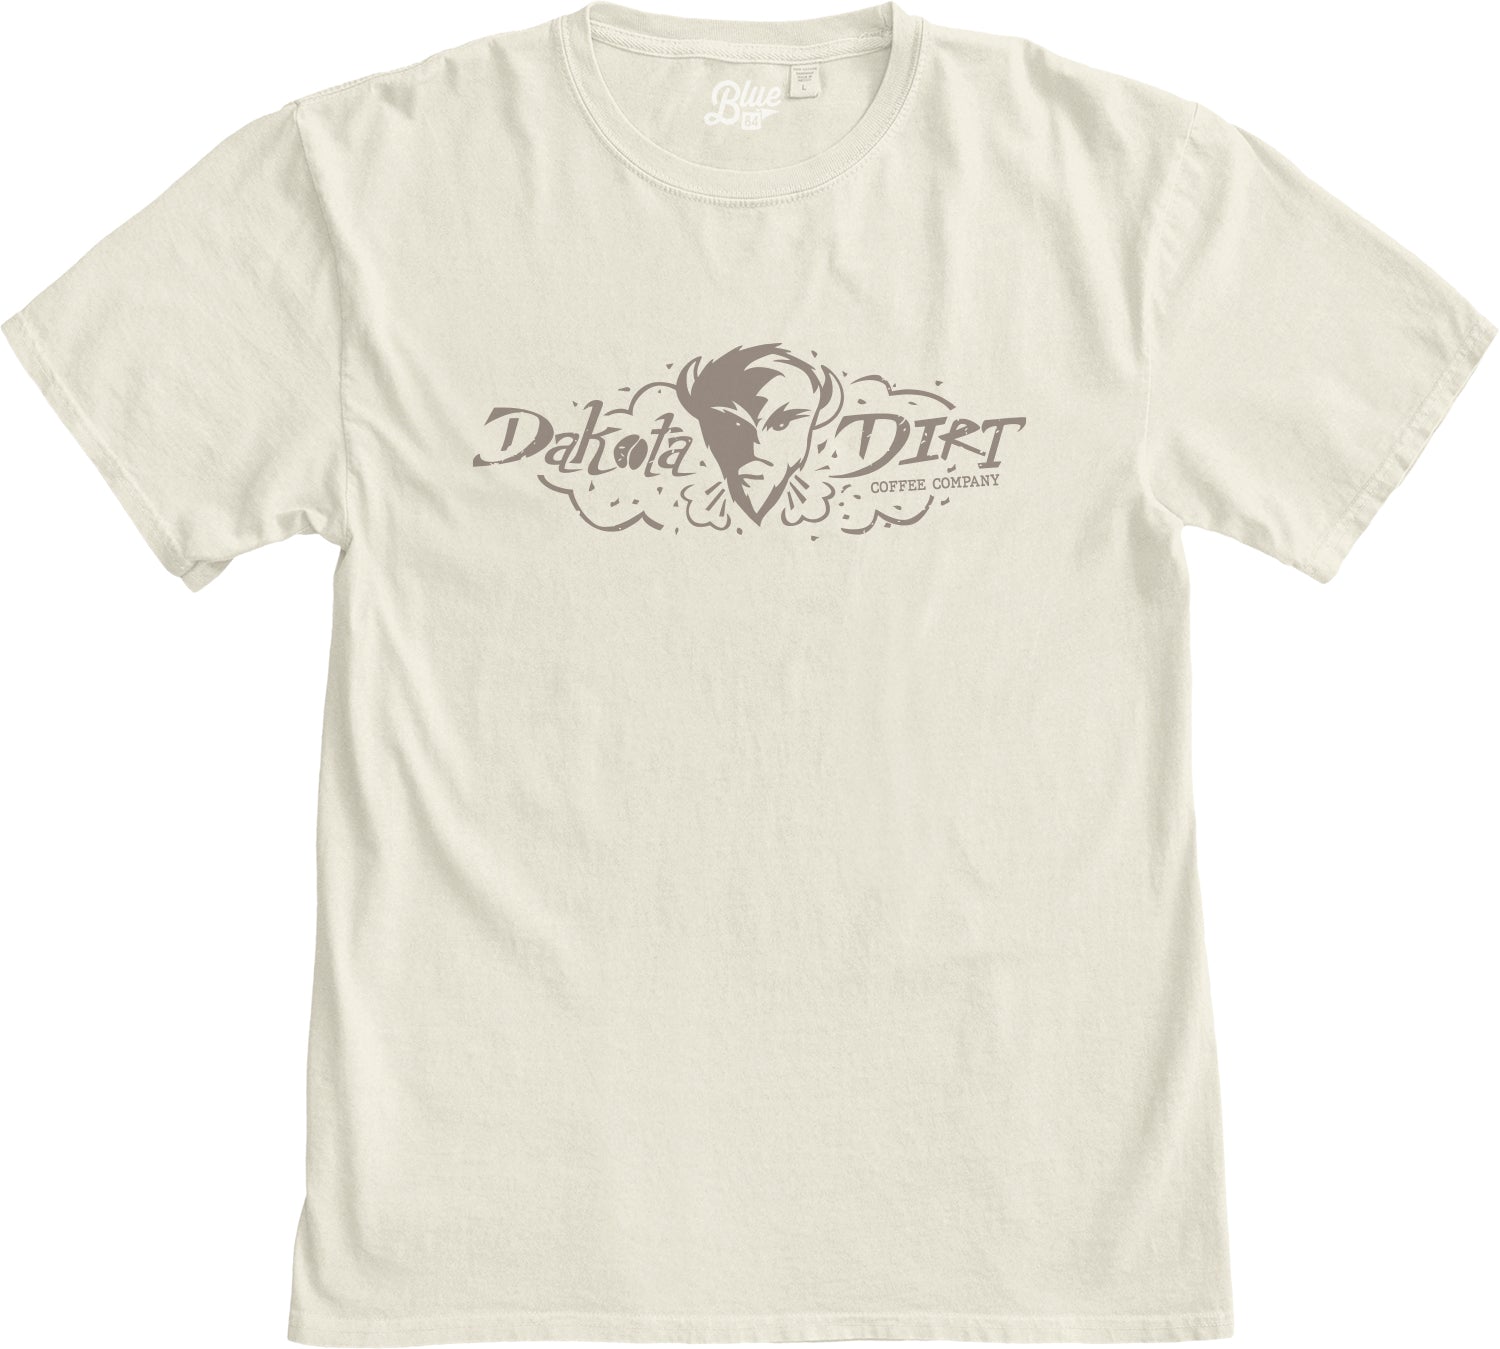 Dakota Dirt Full Logo / Blue84 T-Shirt